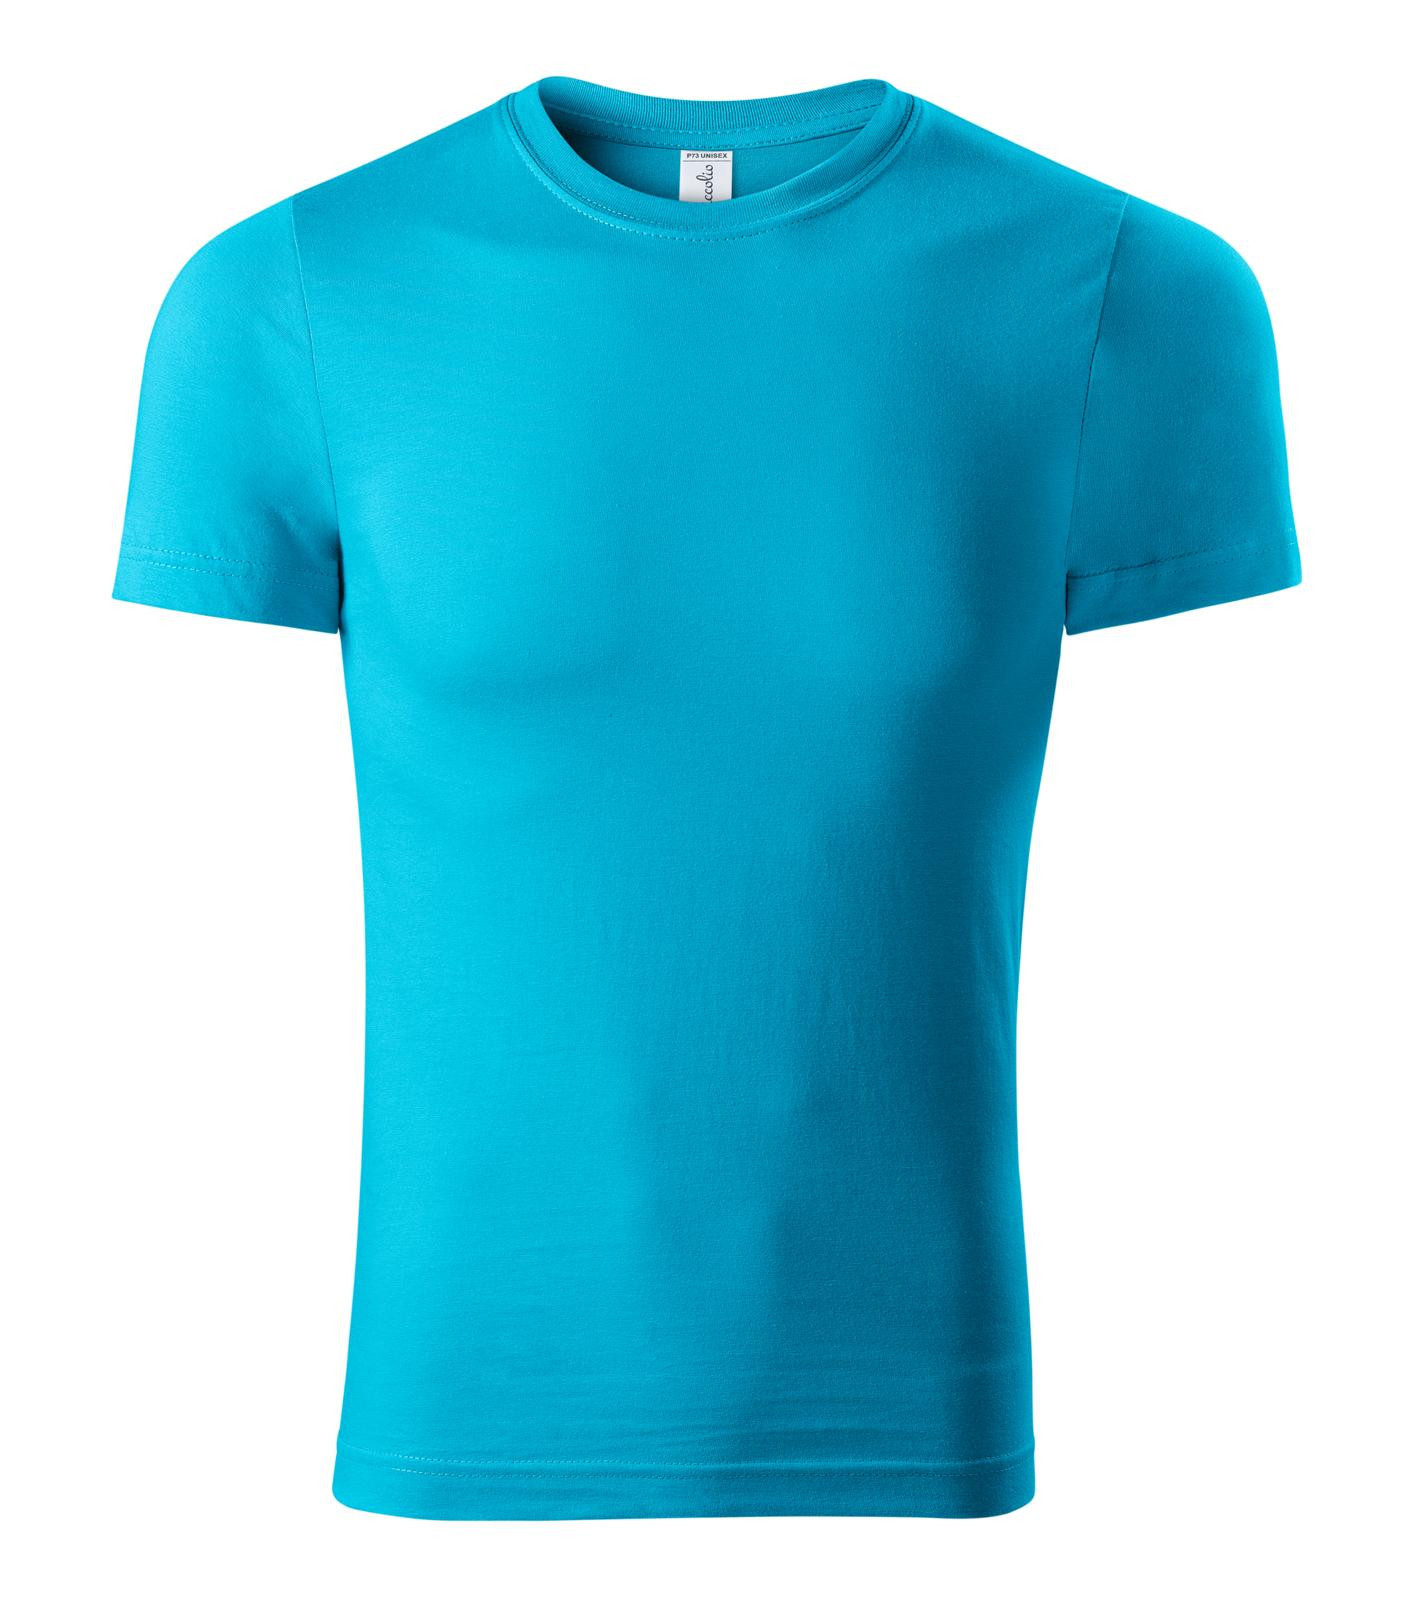 Unisex tričko Piccolio Paint P73 - veľkosť: 3XL, farba: tyrkysová